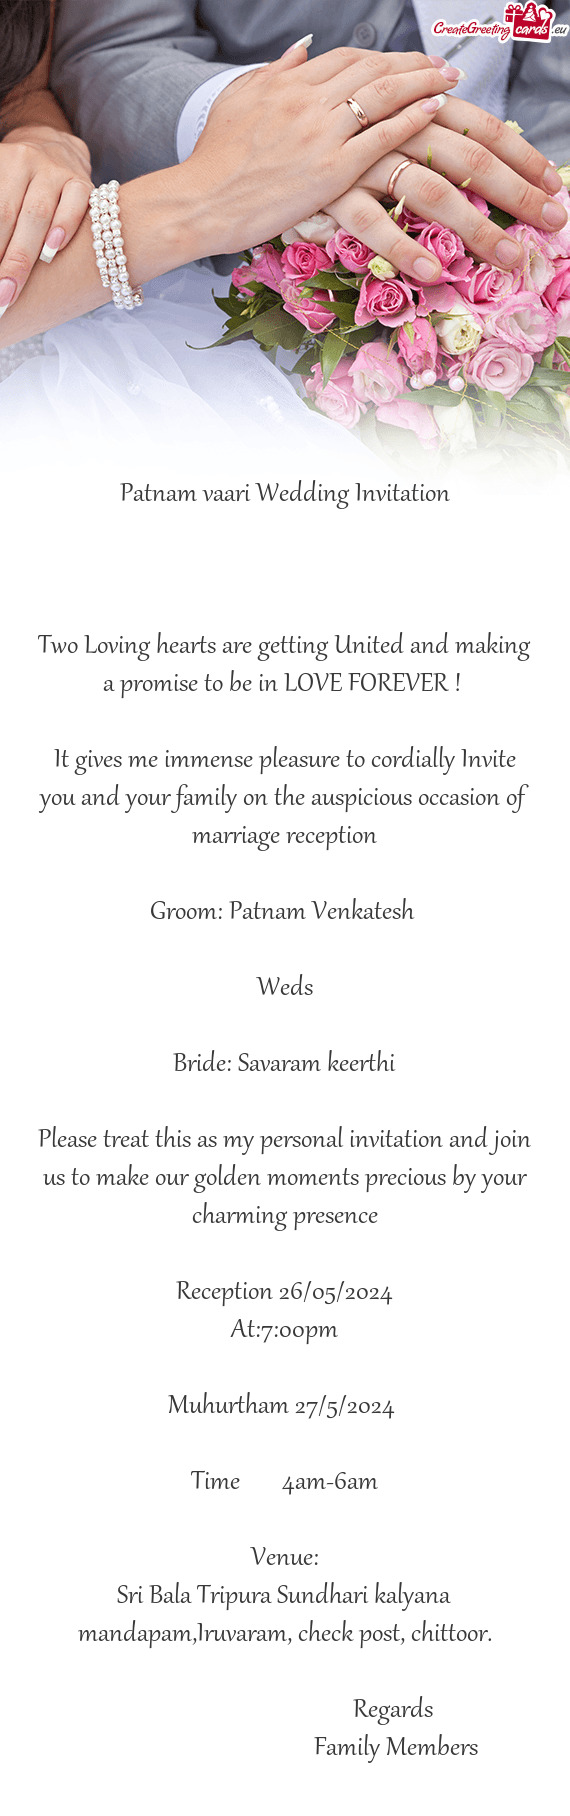 Patnam vaari Wedding Invitation